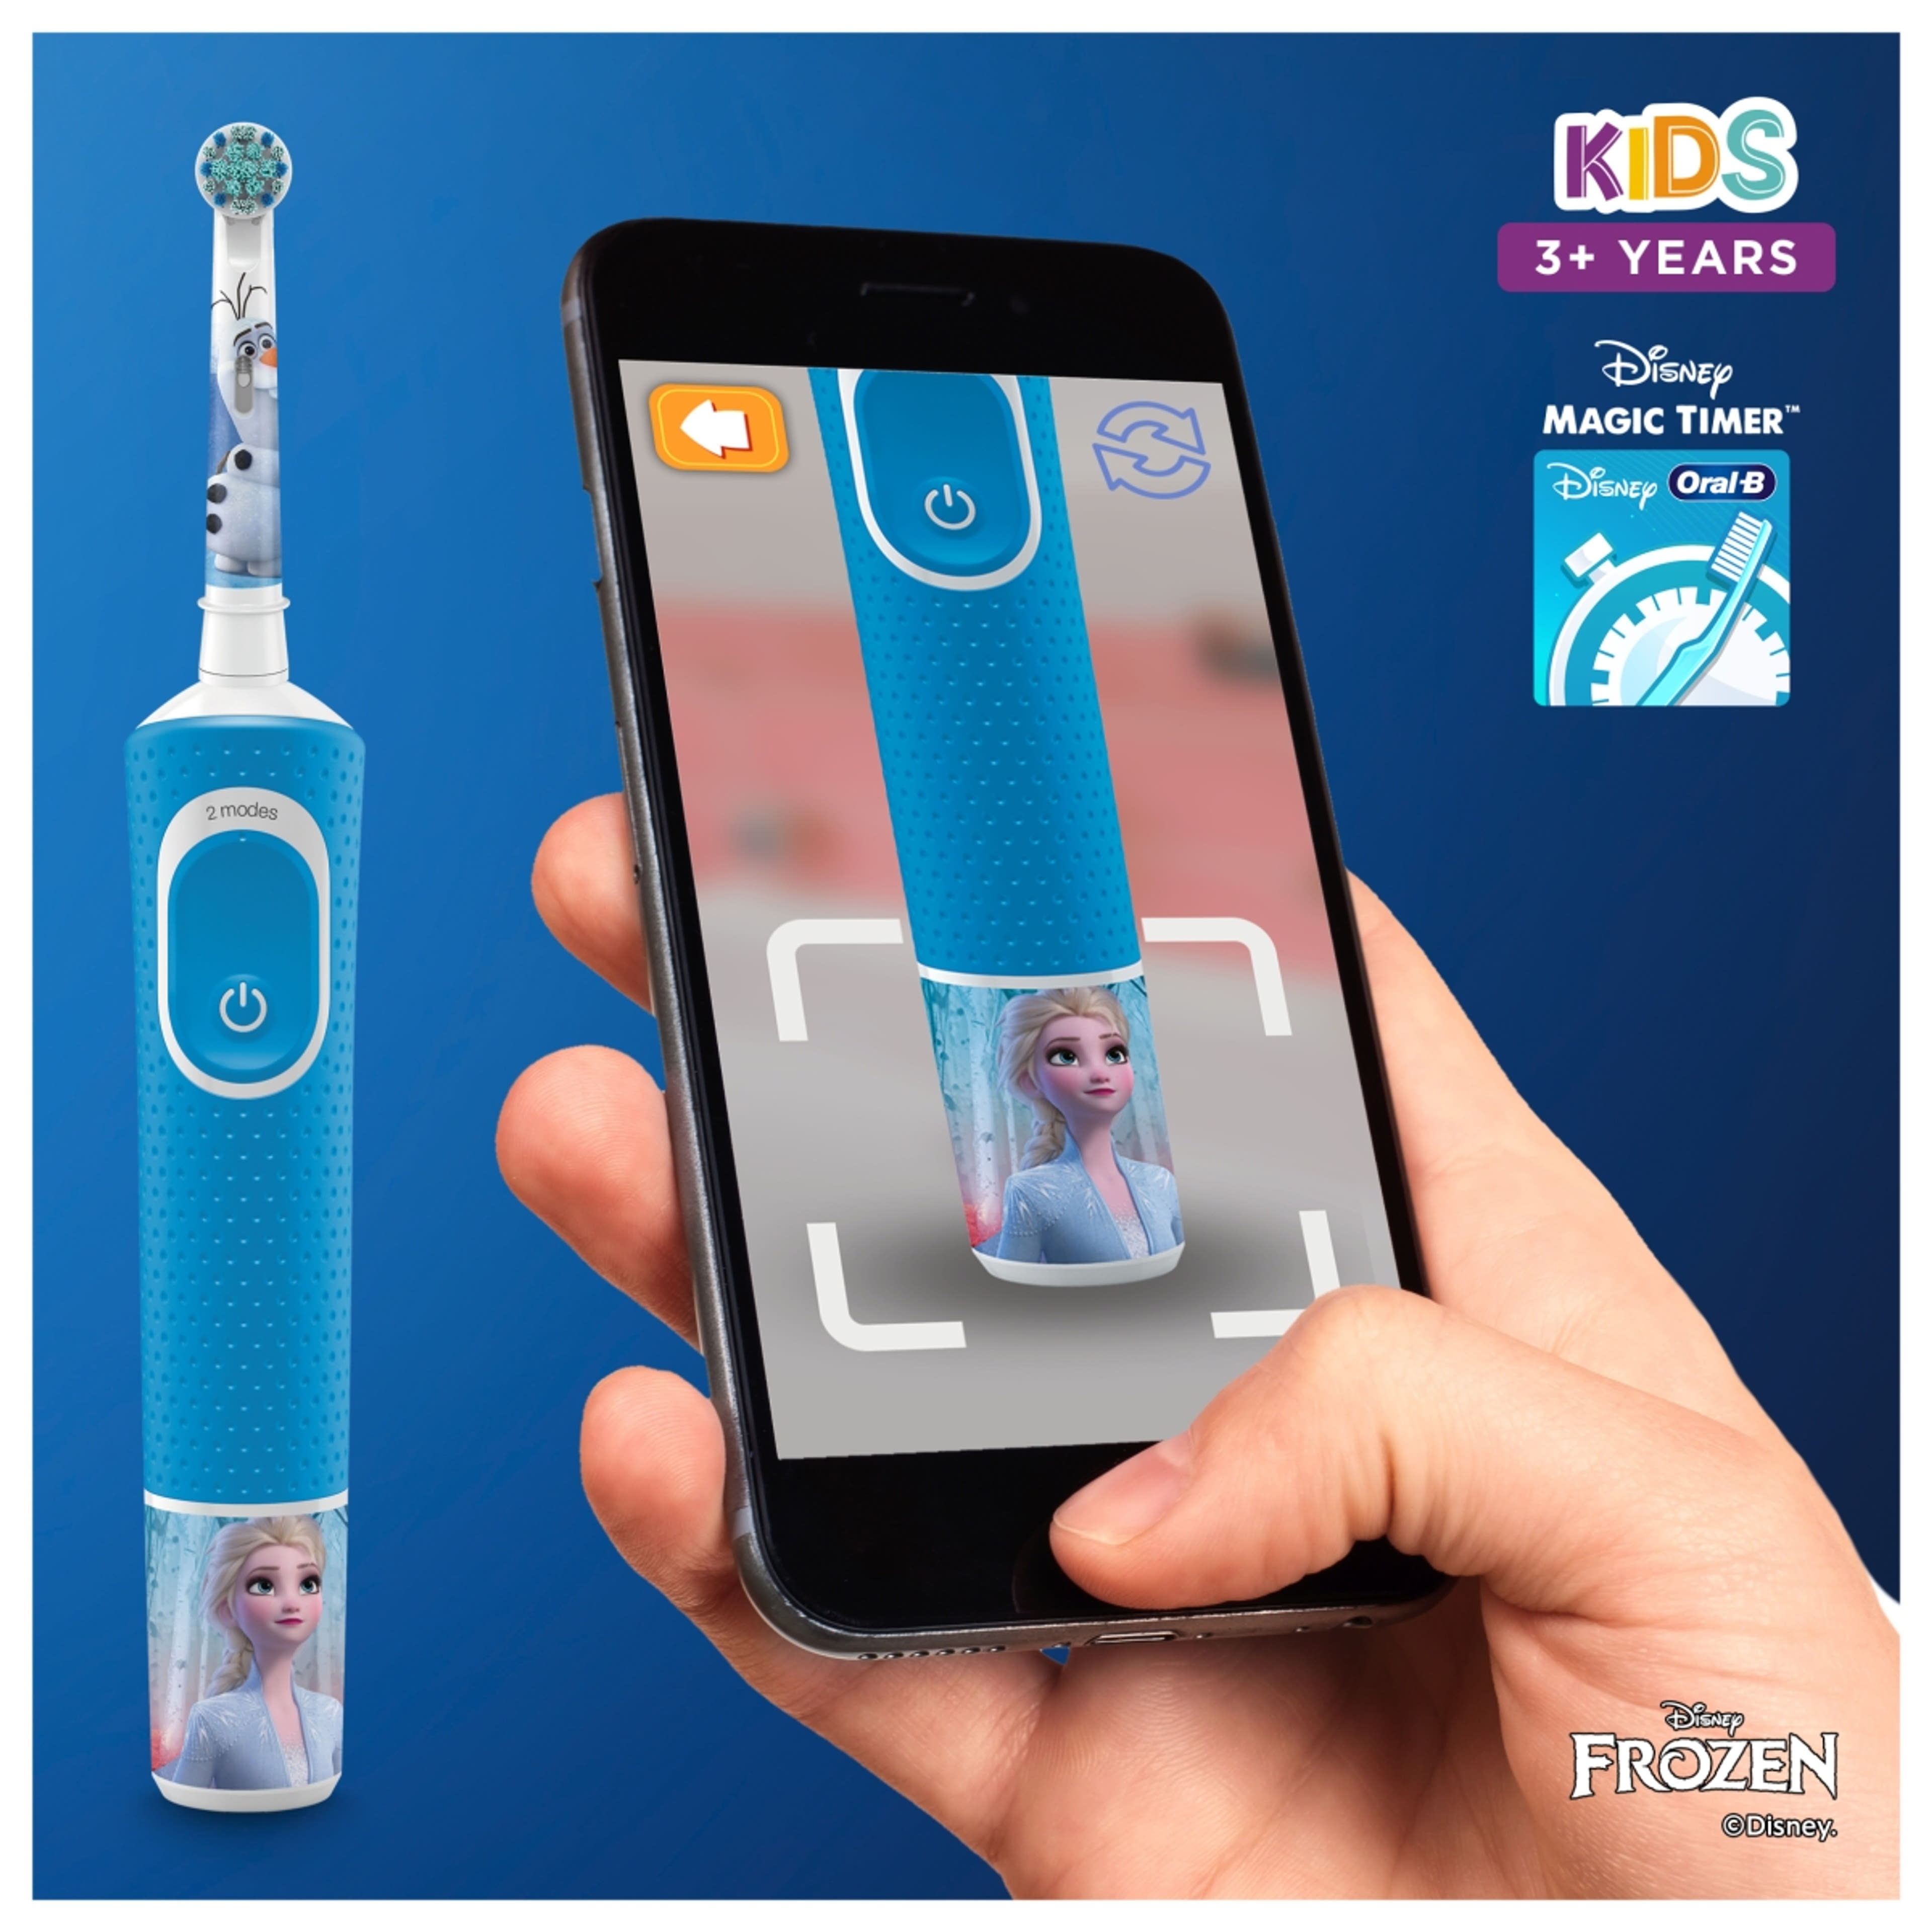 Oral-B elektromos fogkefe Frozen, családi kiszerelés - 2 db-4